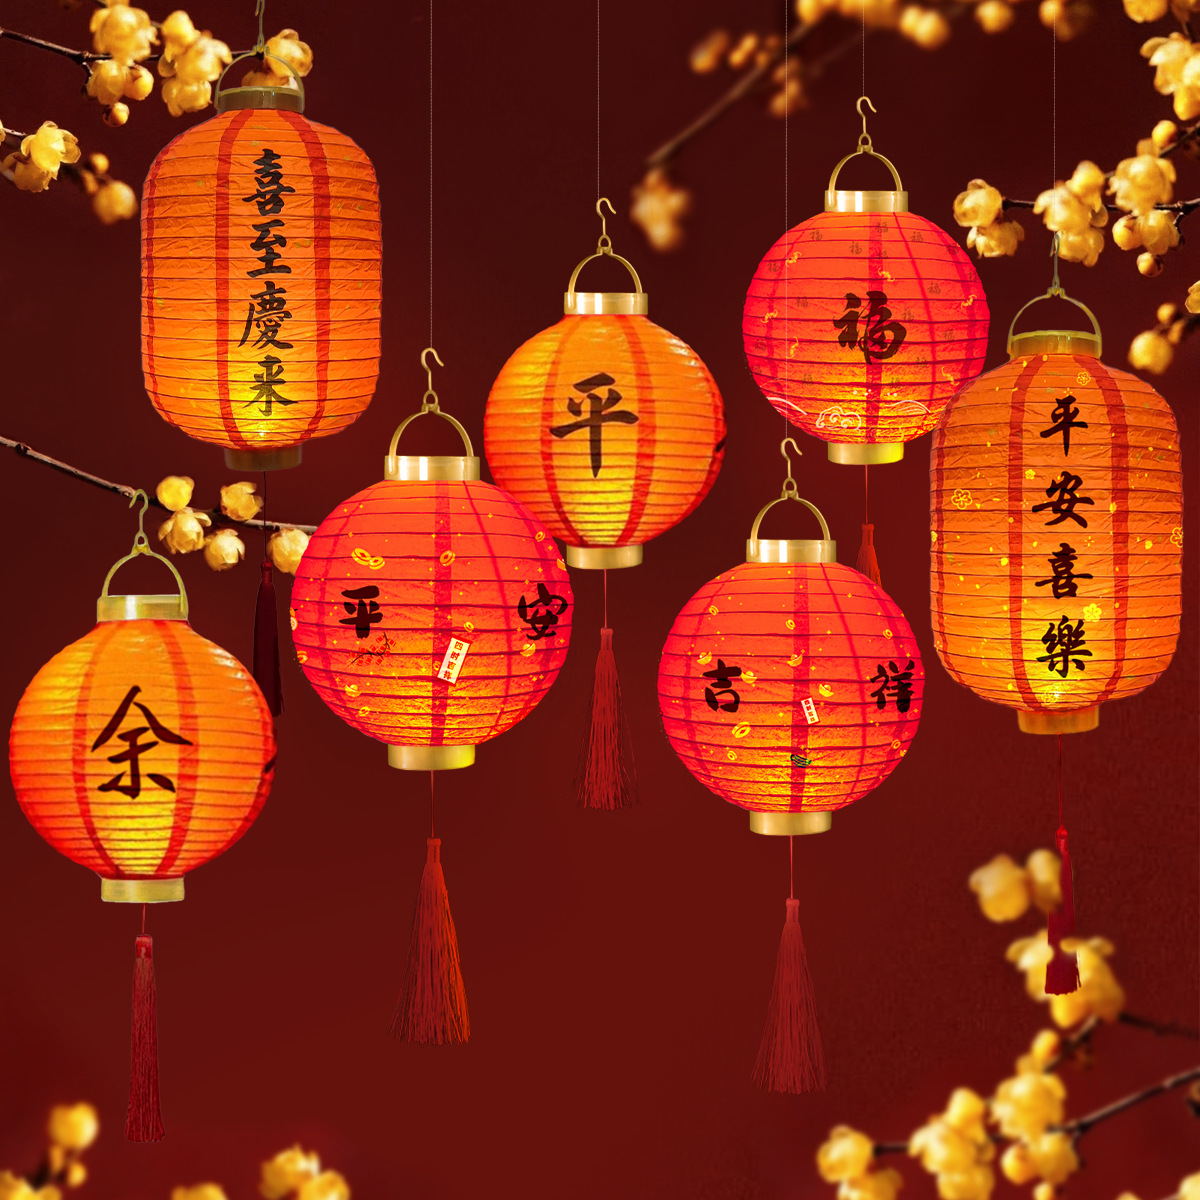 new year lantern dragon year spring festival lantern festival chinese lantern red chinese style new year festive lantern luminous decorative portable ornaments